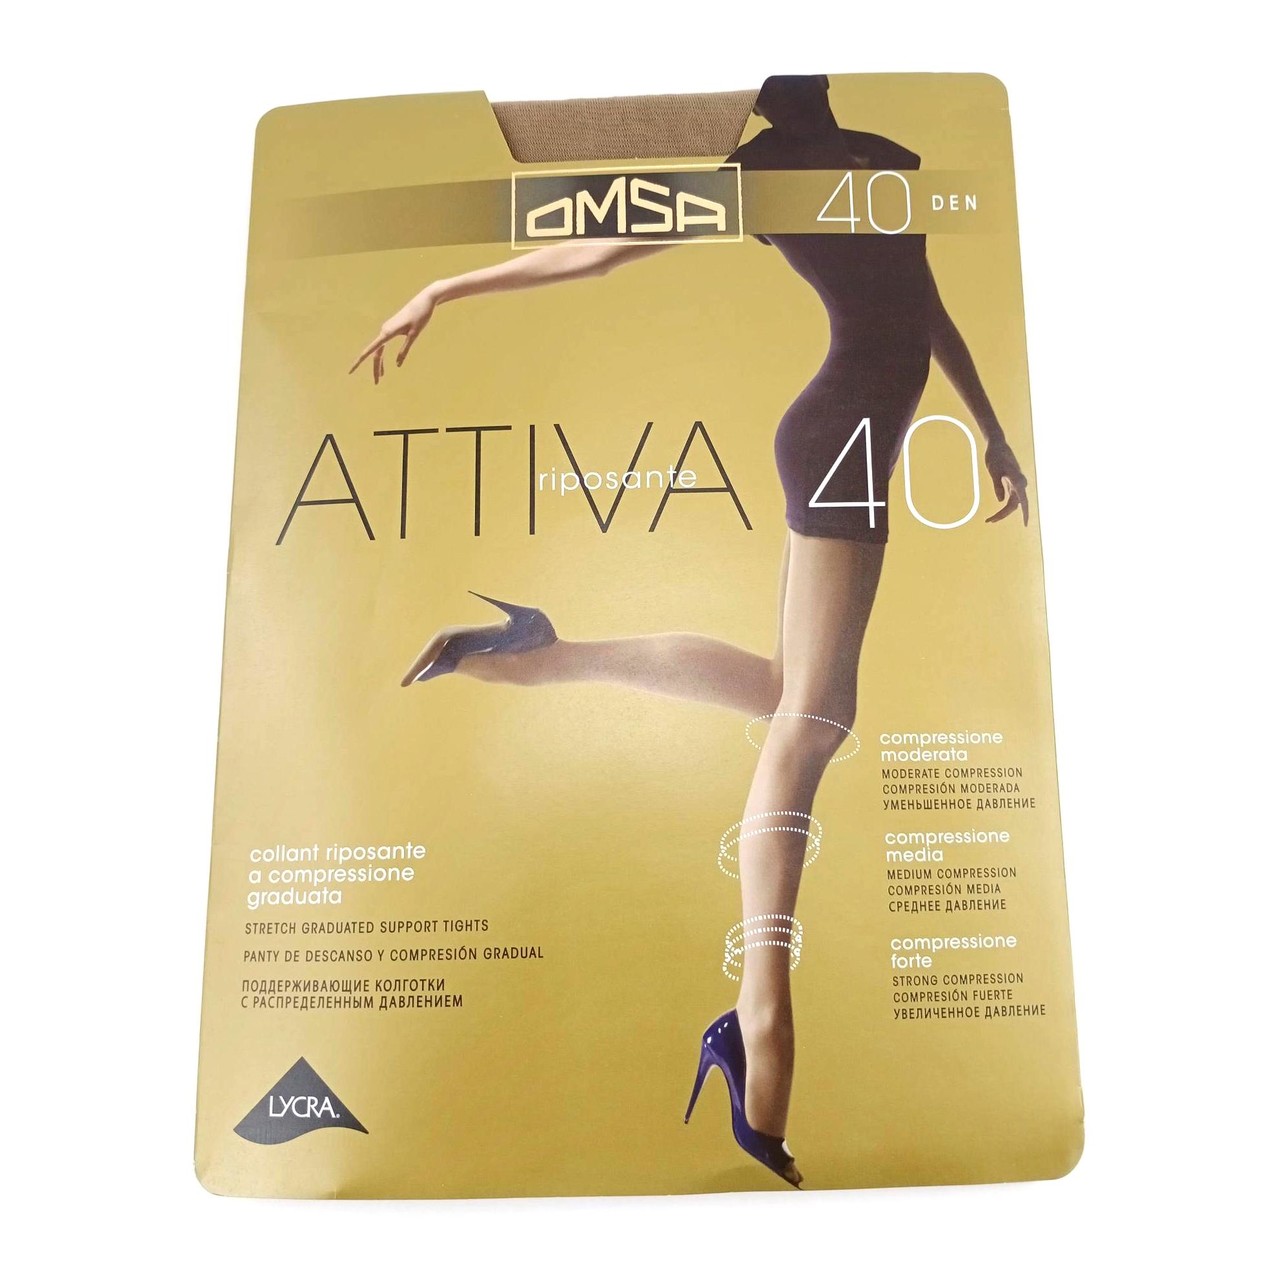 Колготки OMSA Attiva 40 den, цвет daino, размер 2 (S) купить за 350 ₽ в  интернет-магазине Mirichi.ru